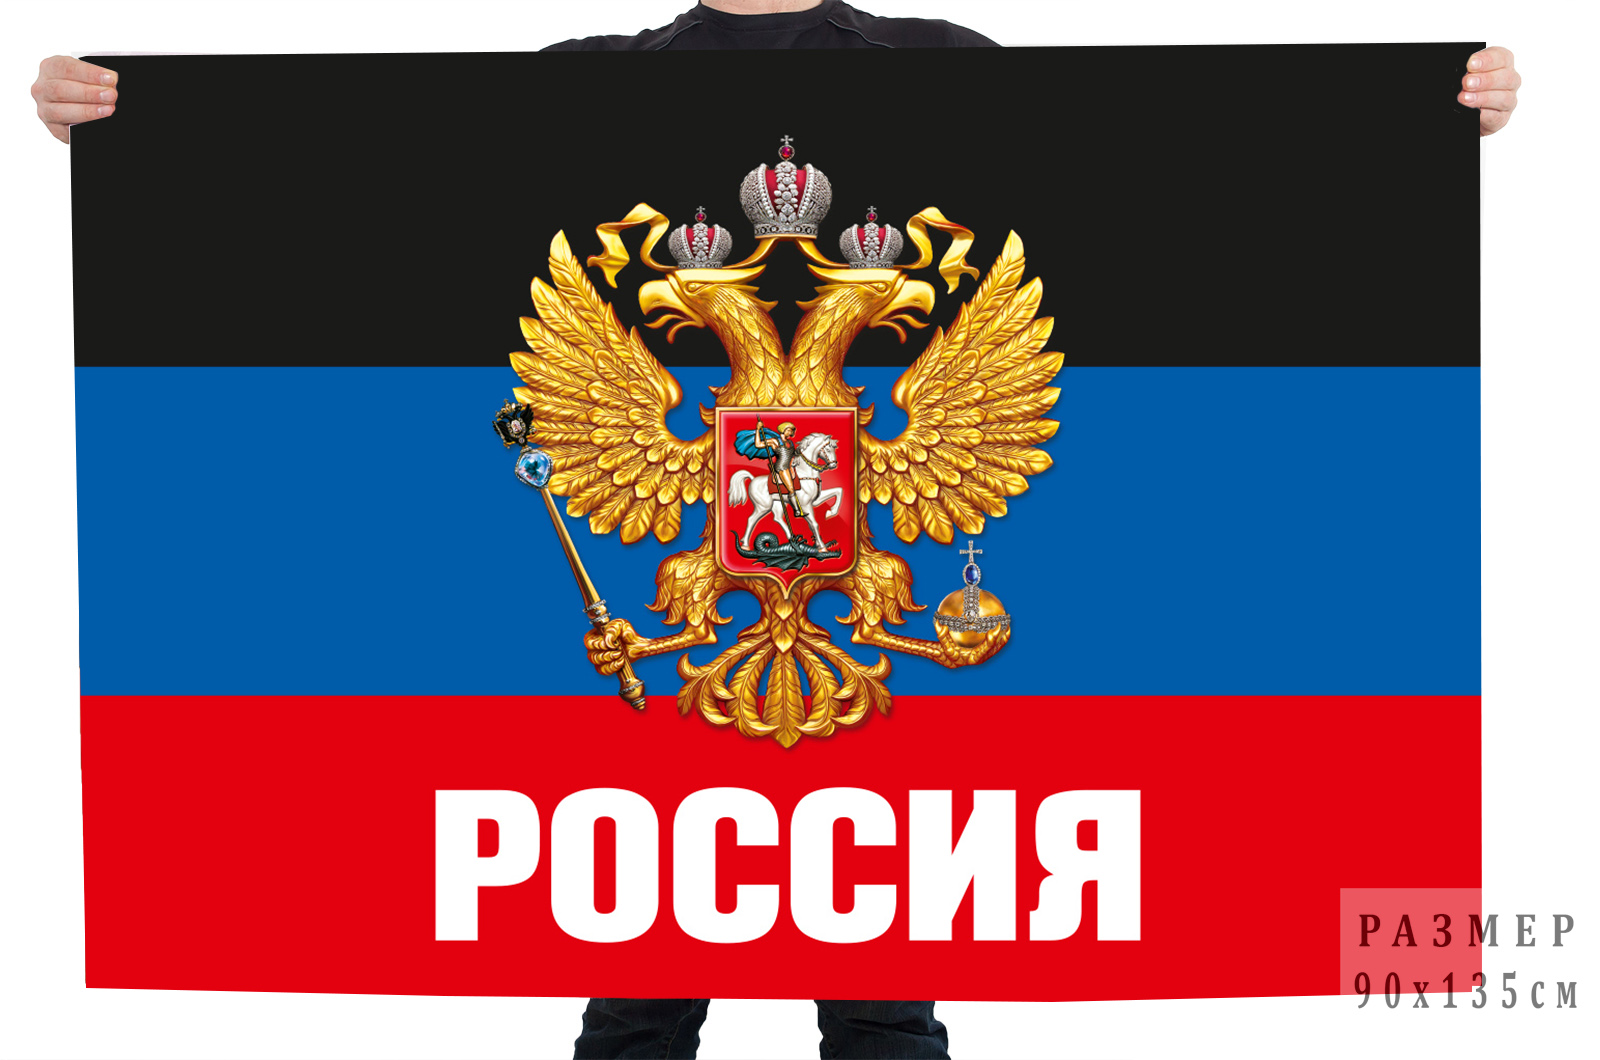 Купить флаг ДНР с гербом РФ